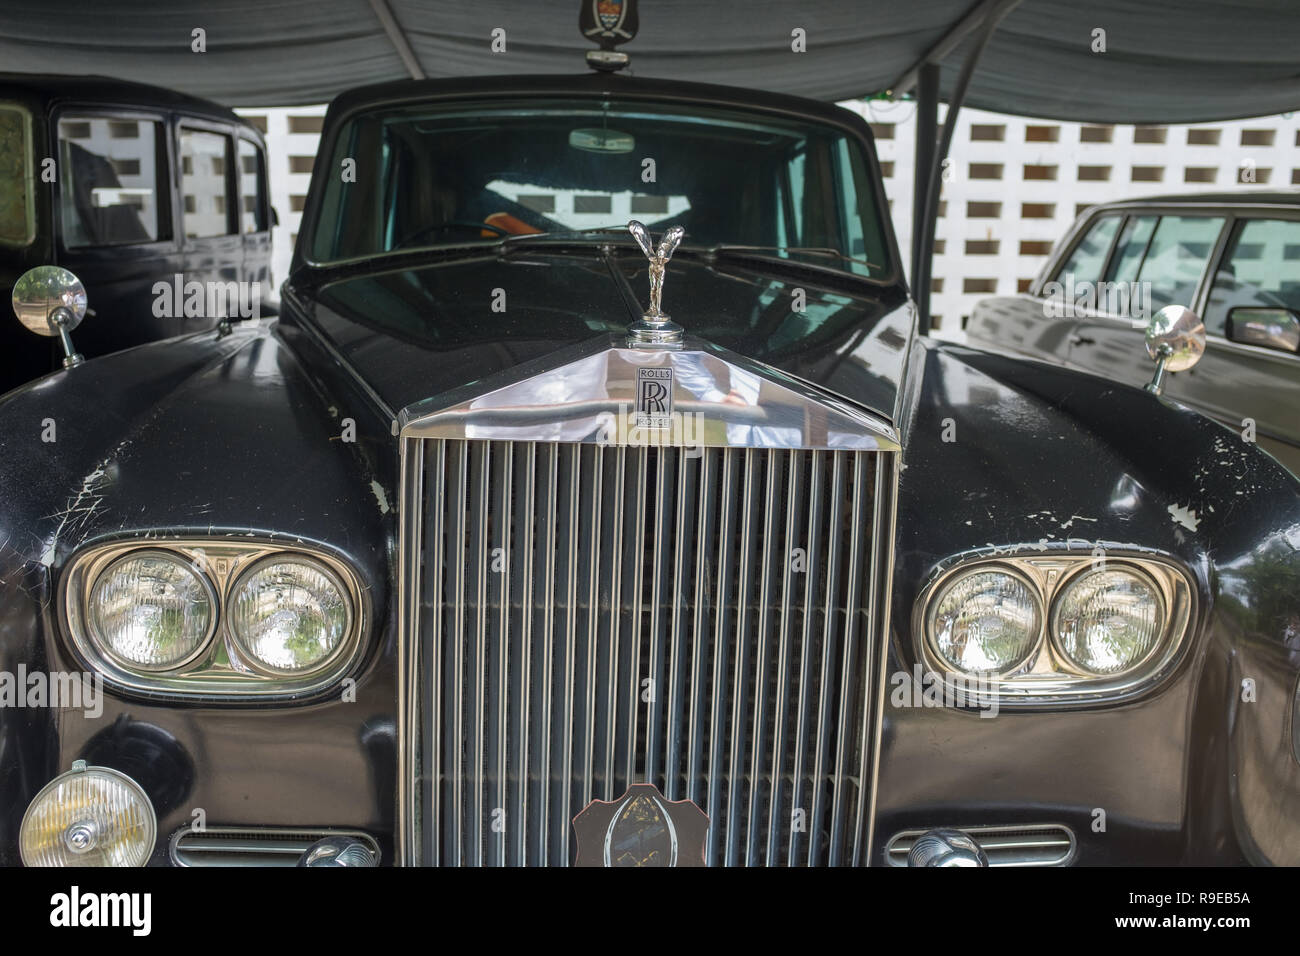 Dar es Salaam, Tanzanie, 7 mars 2018 : Rolls Royce construit en 1938 et utilisé par Sir Richard Turnbull, le dernier gouverneur britannique, dans le Musée National Banque D'Images